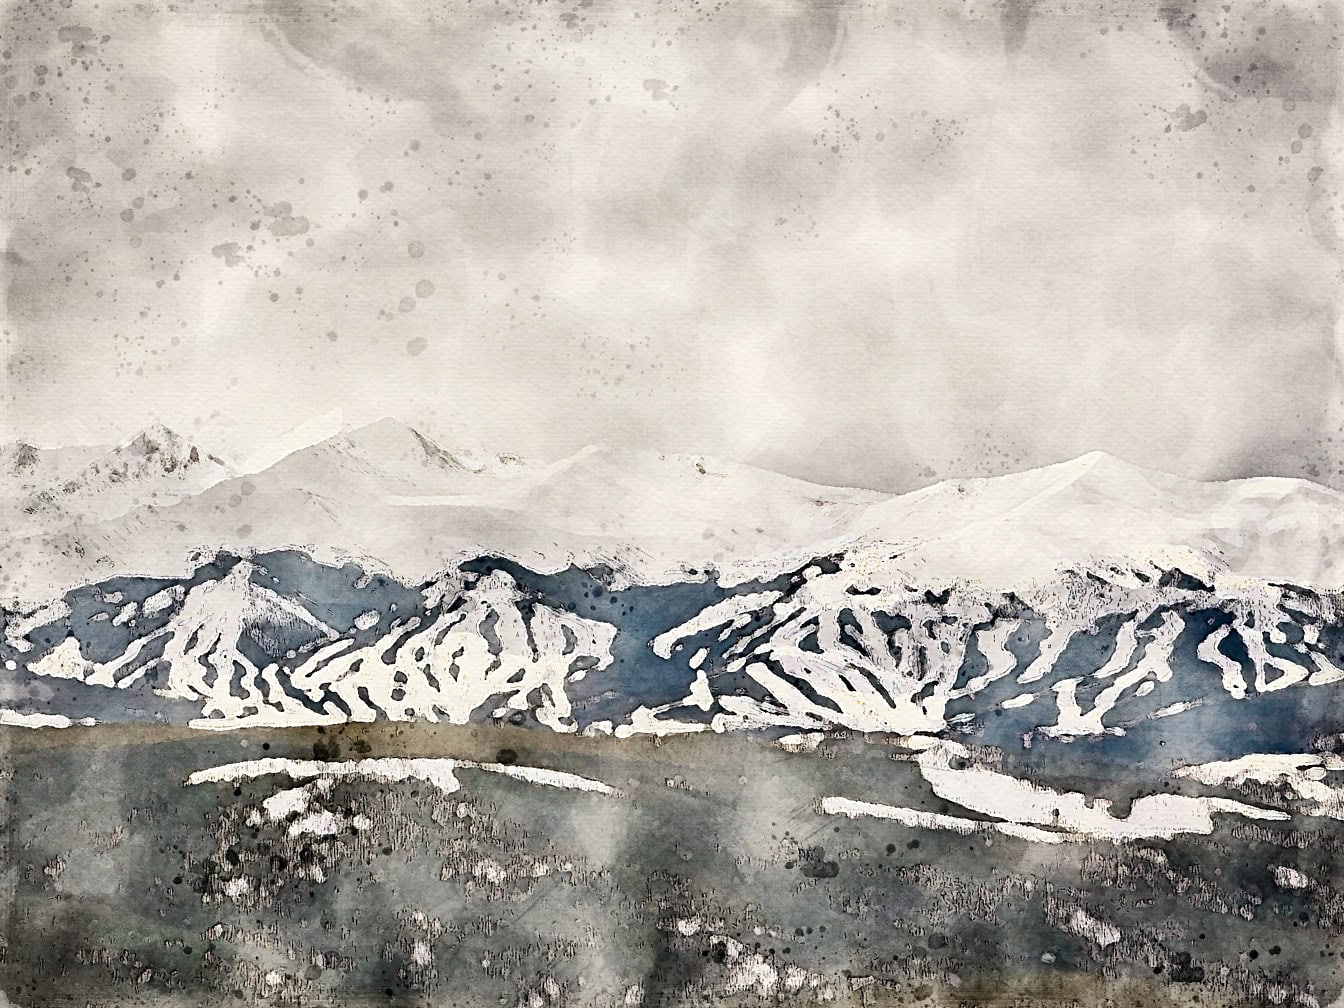 Pictură abstractă în acuarelă a unui lanț muntos cu vârfuri montane înzăpezite